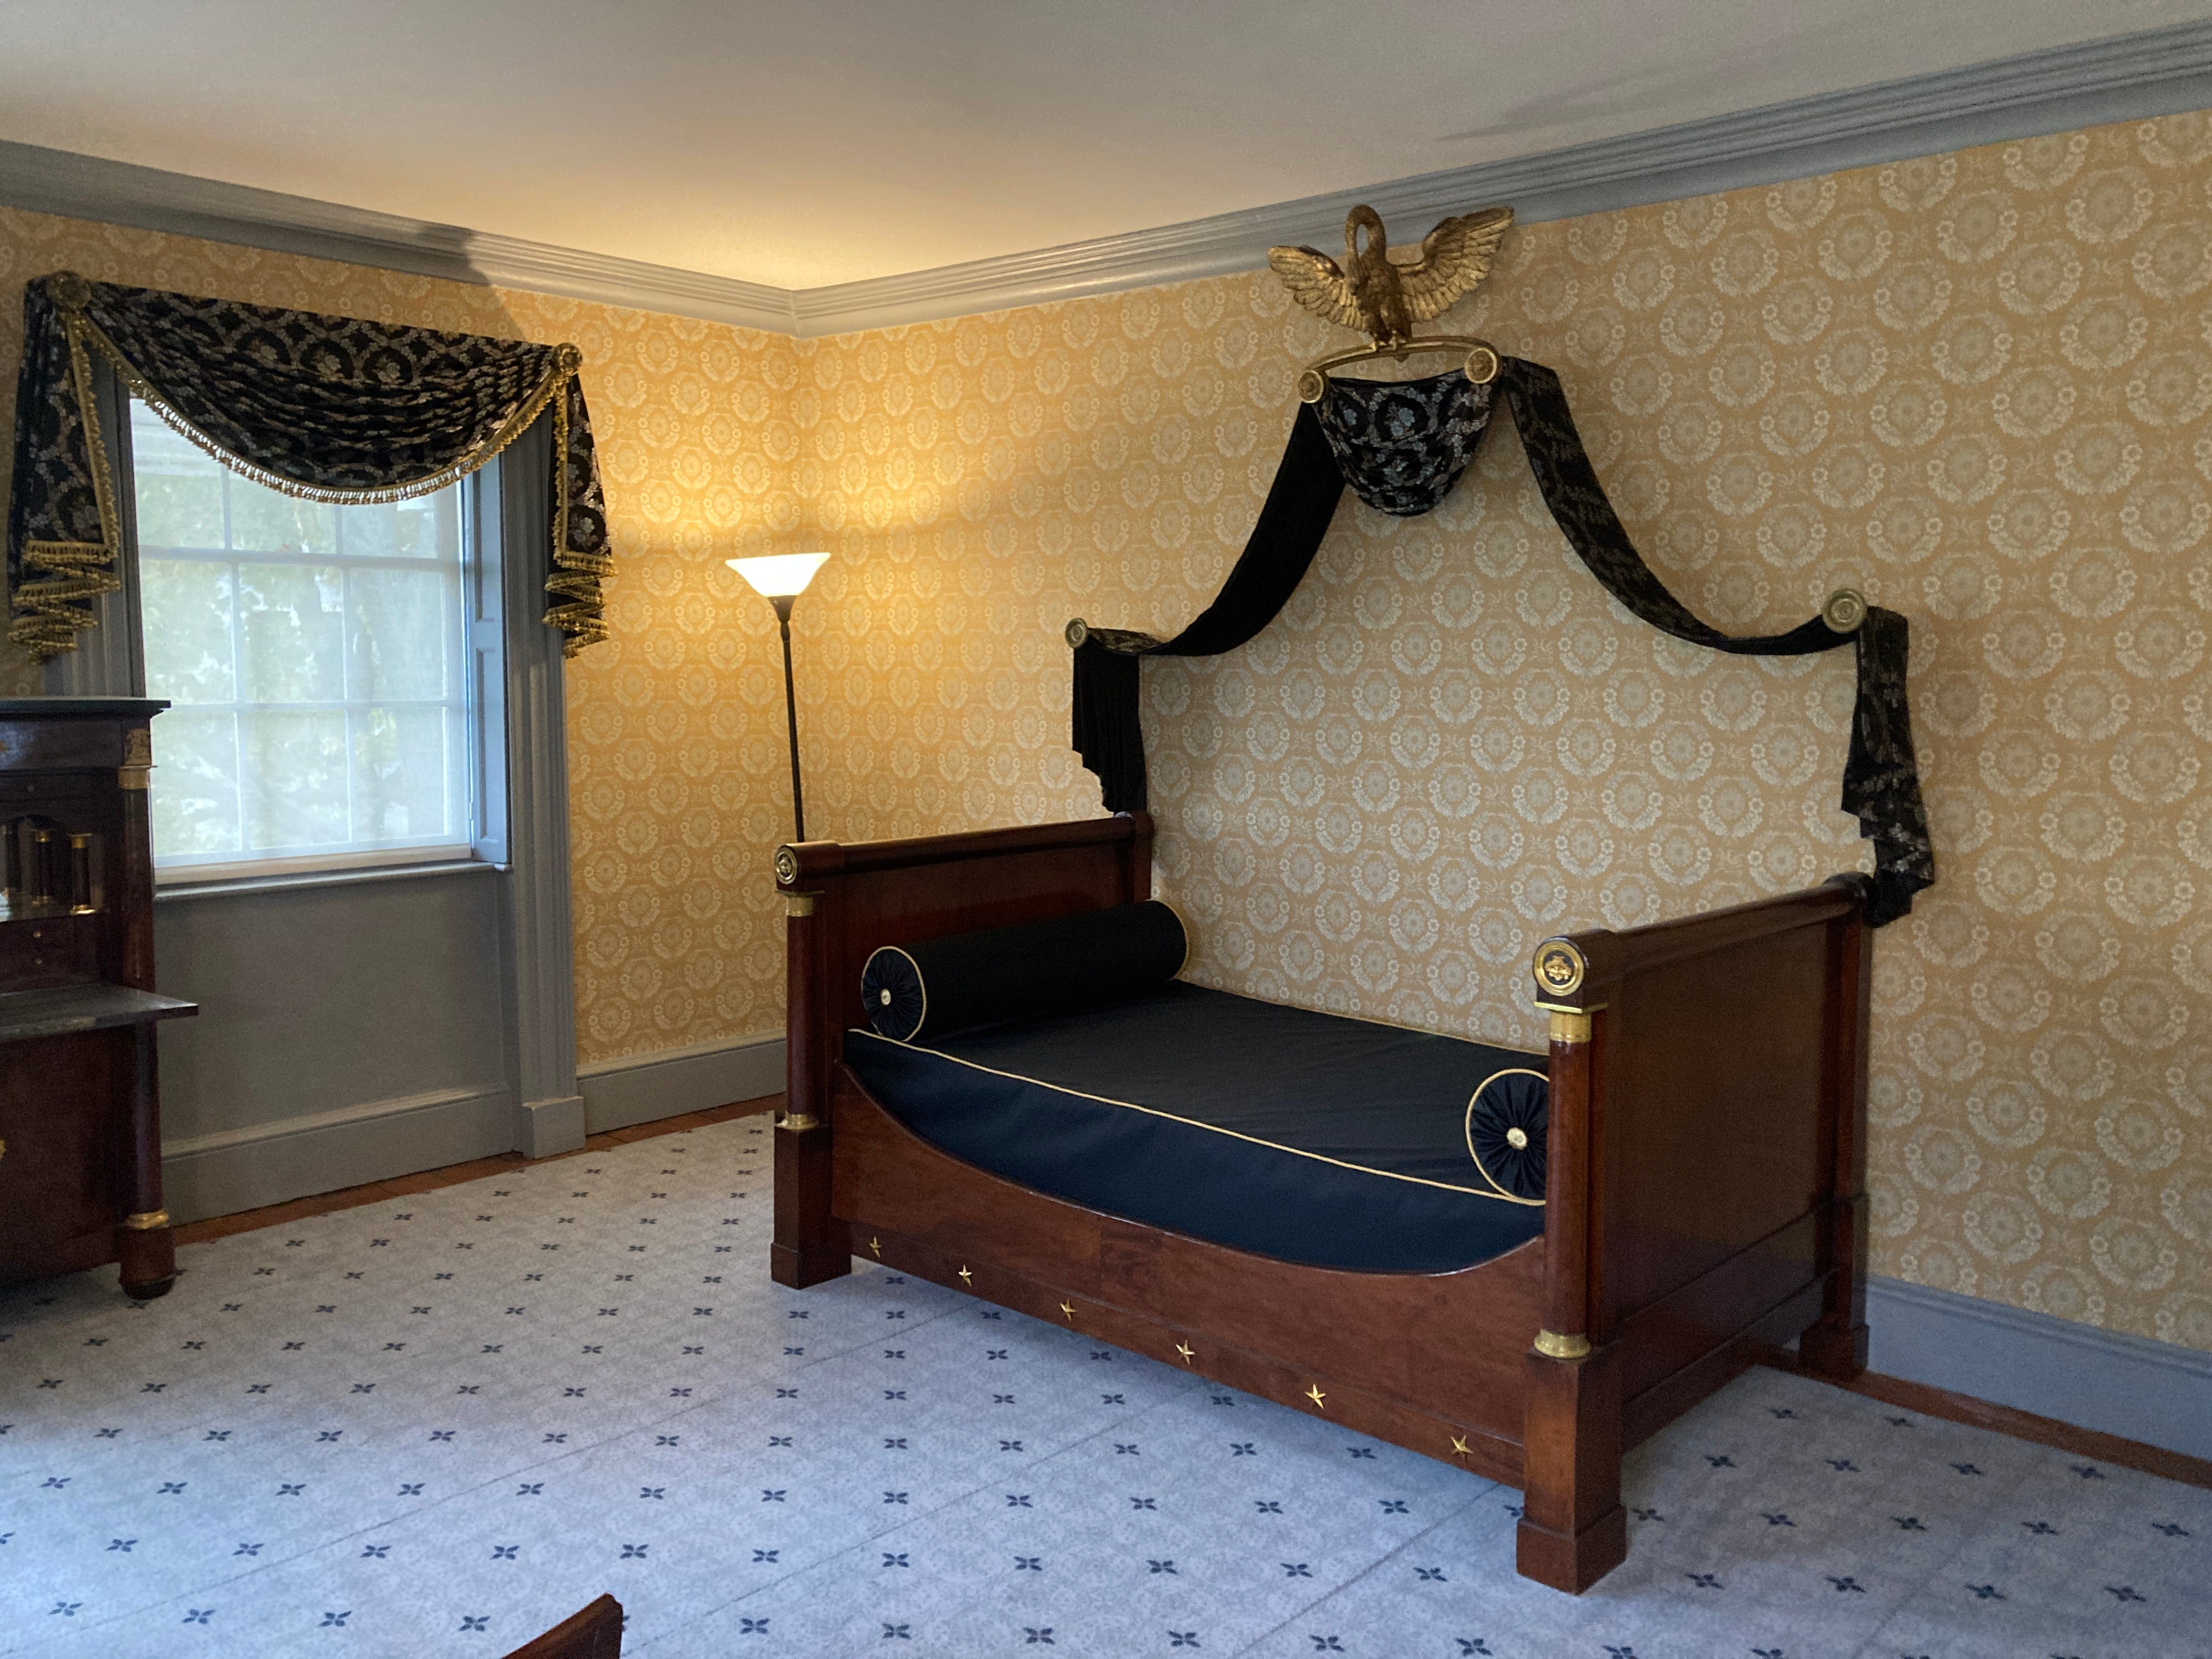 Ein Schlafzimmer im Morris-Jumel Mansion.